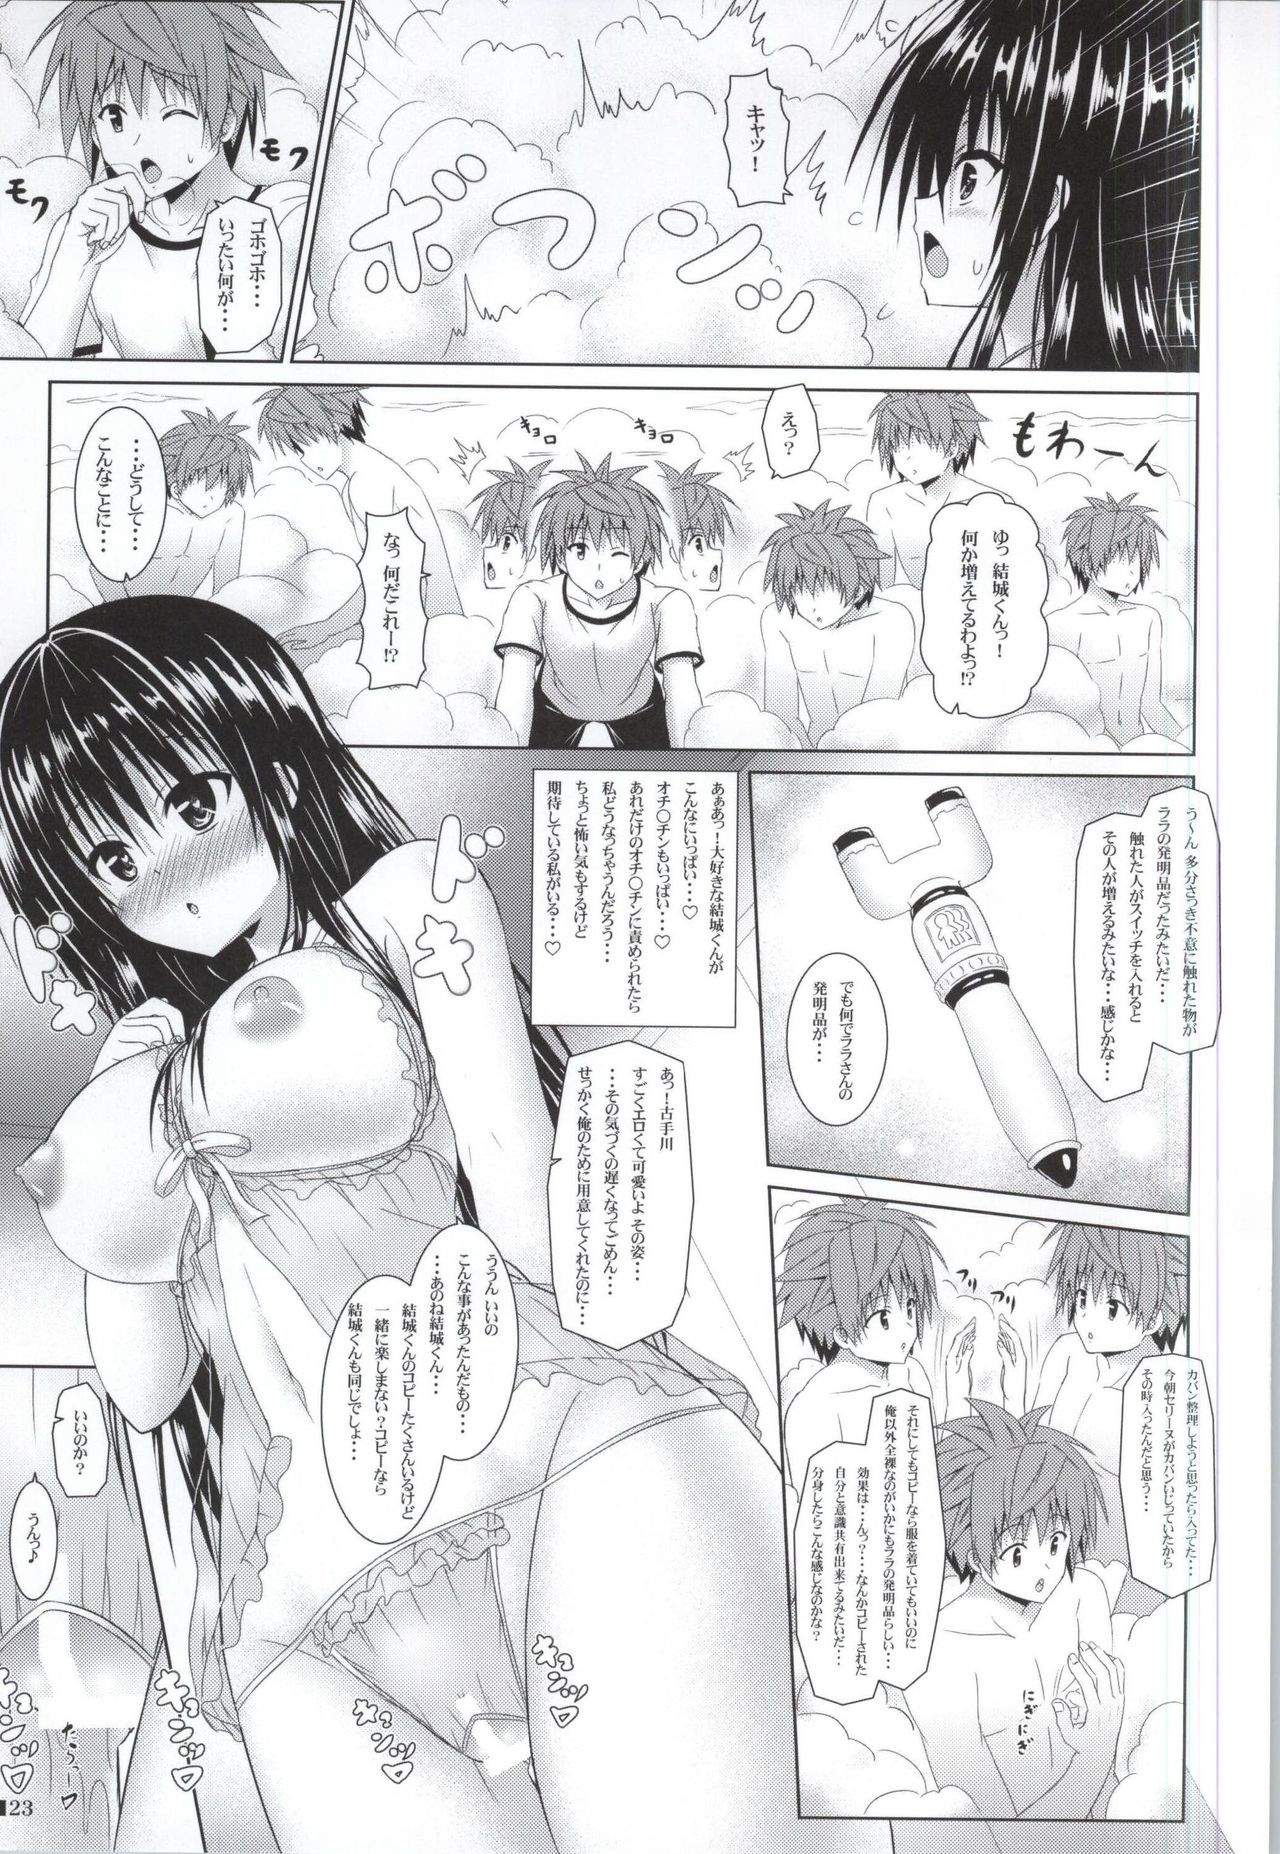 Yui-chan to Issho 3 hentai manga picture 22